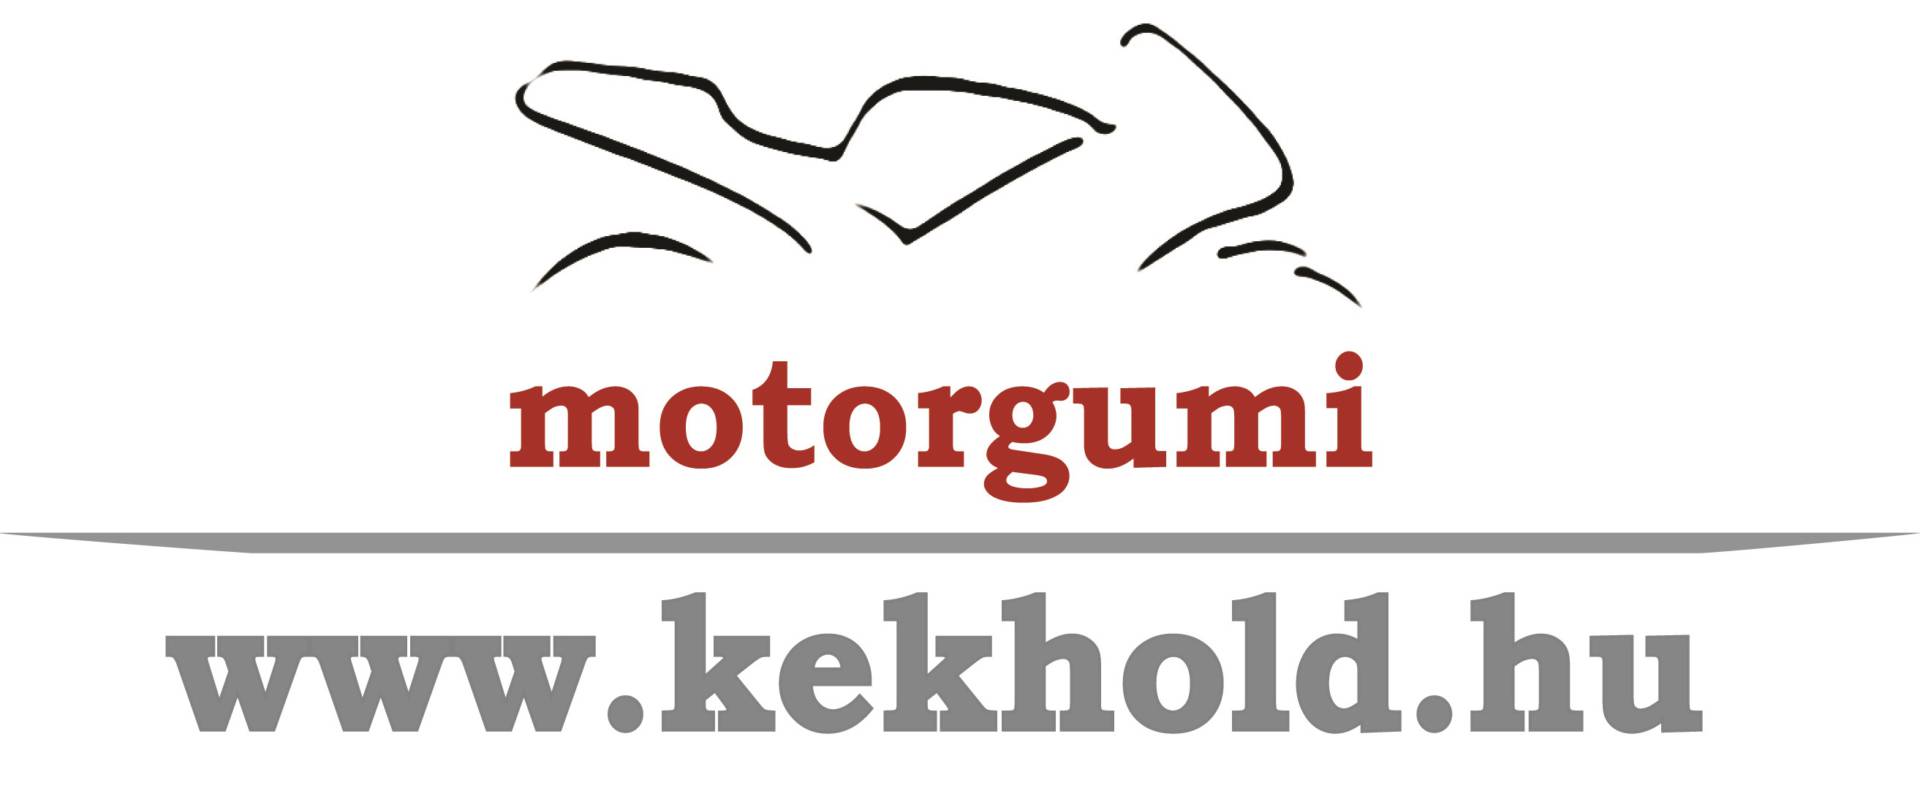 kek-hold-logo.jpg